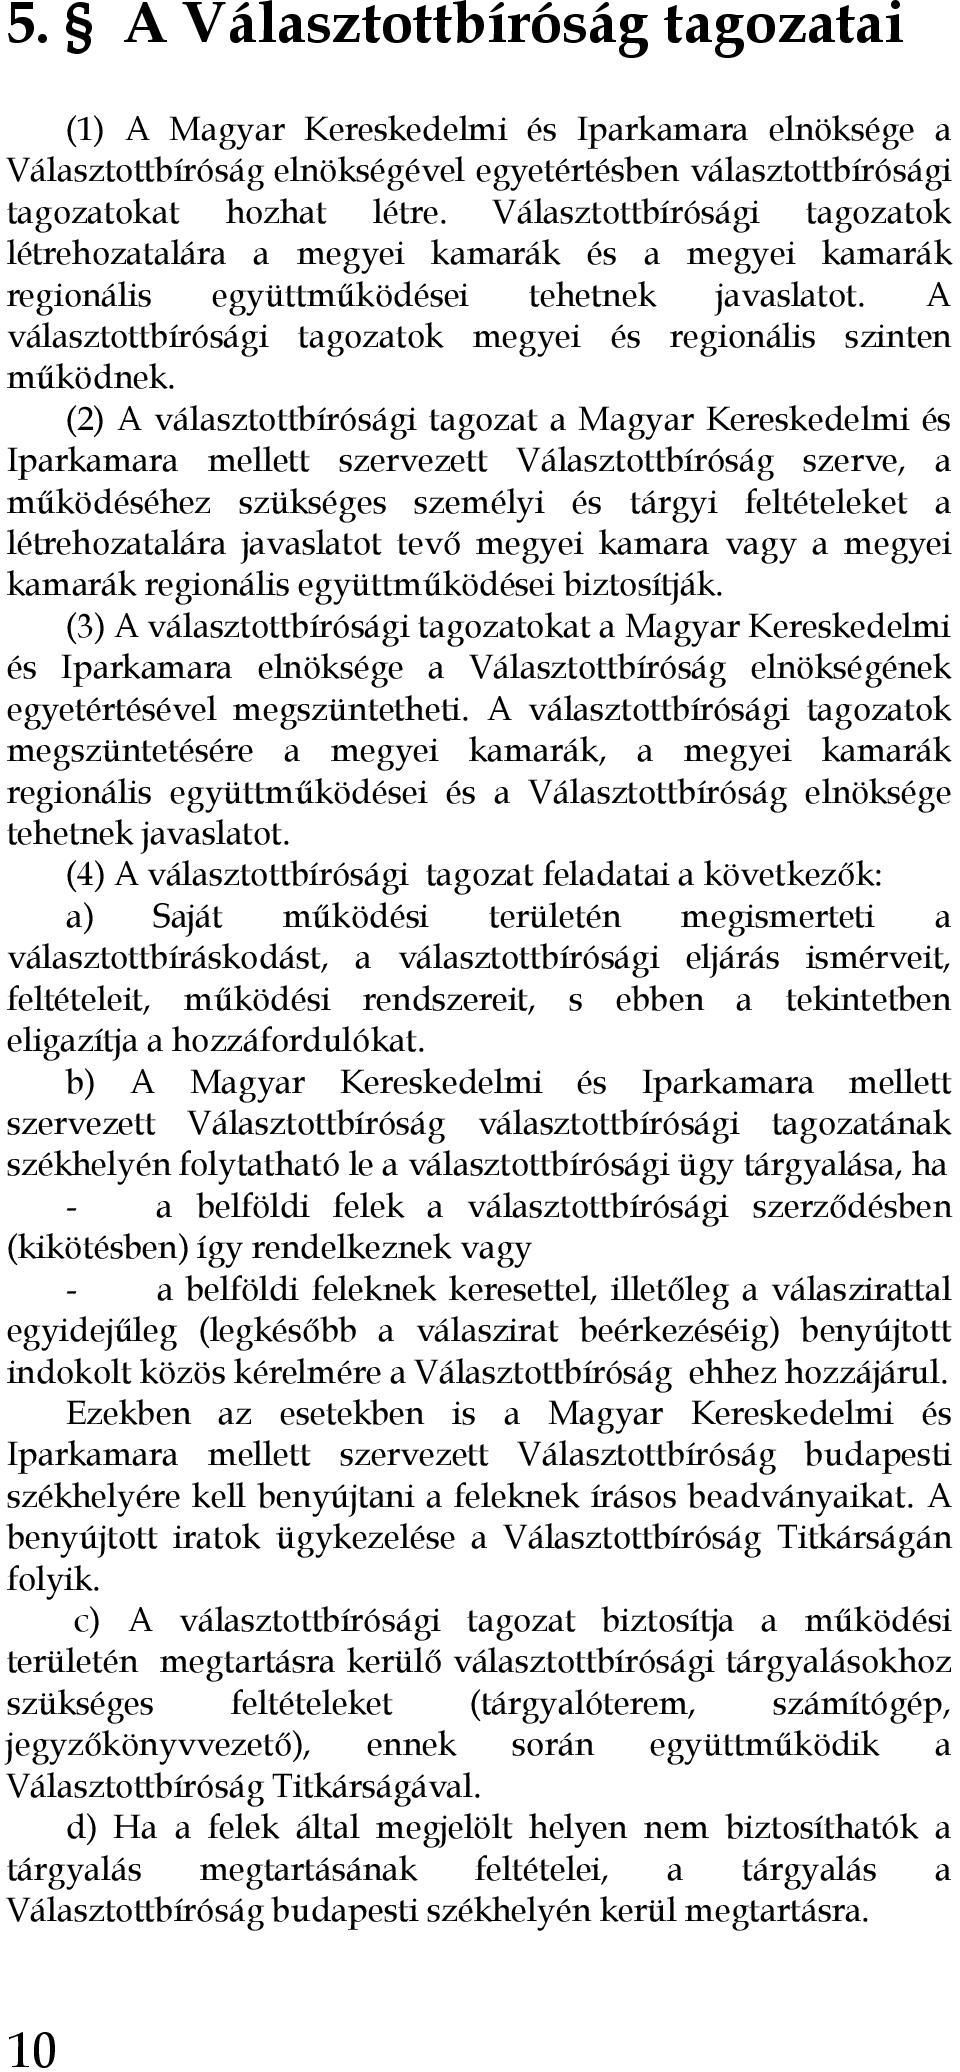 (2) A választottbírósági tagozat a Magyar Kereskedelmi és Iparkamara mellett szervezett Választottbíróság szerve, a mőködéséhez szükséges személyi és tárgyi feltételeket a létrehozatalára javaslatot